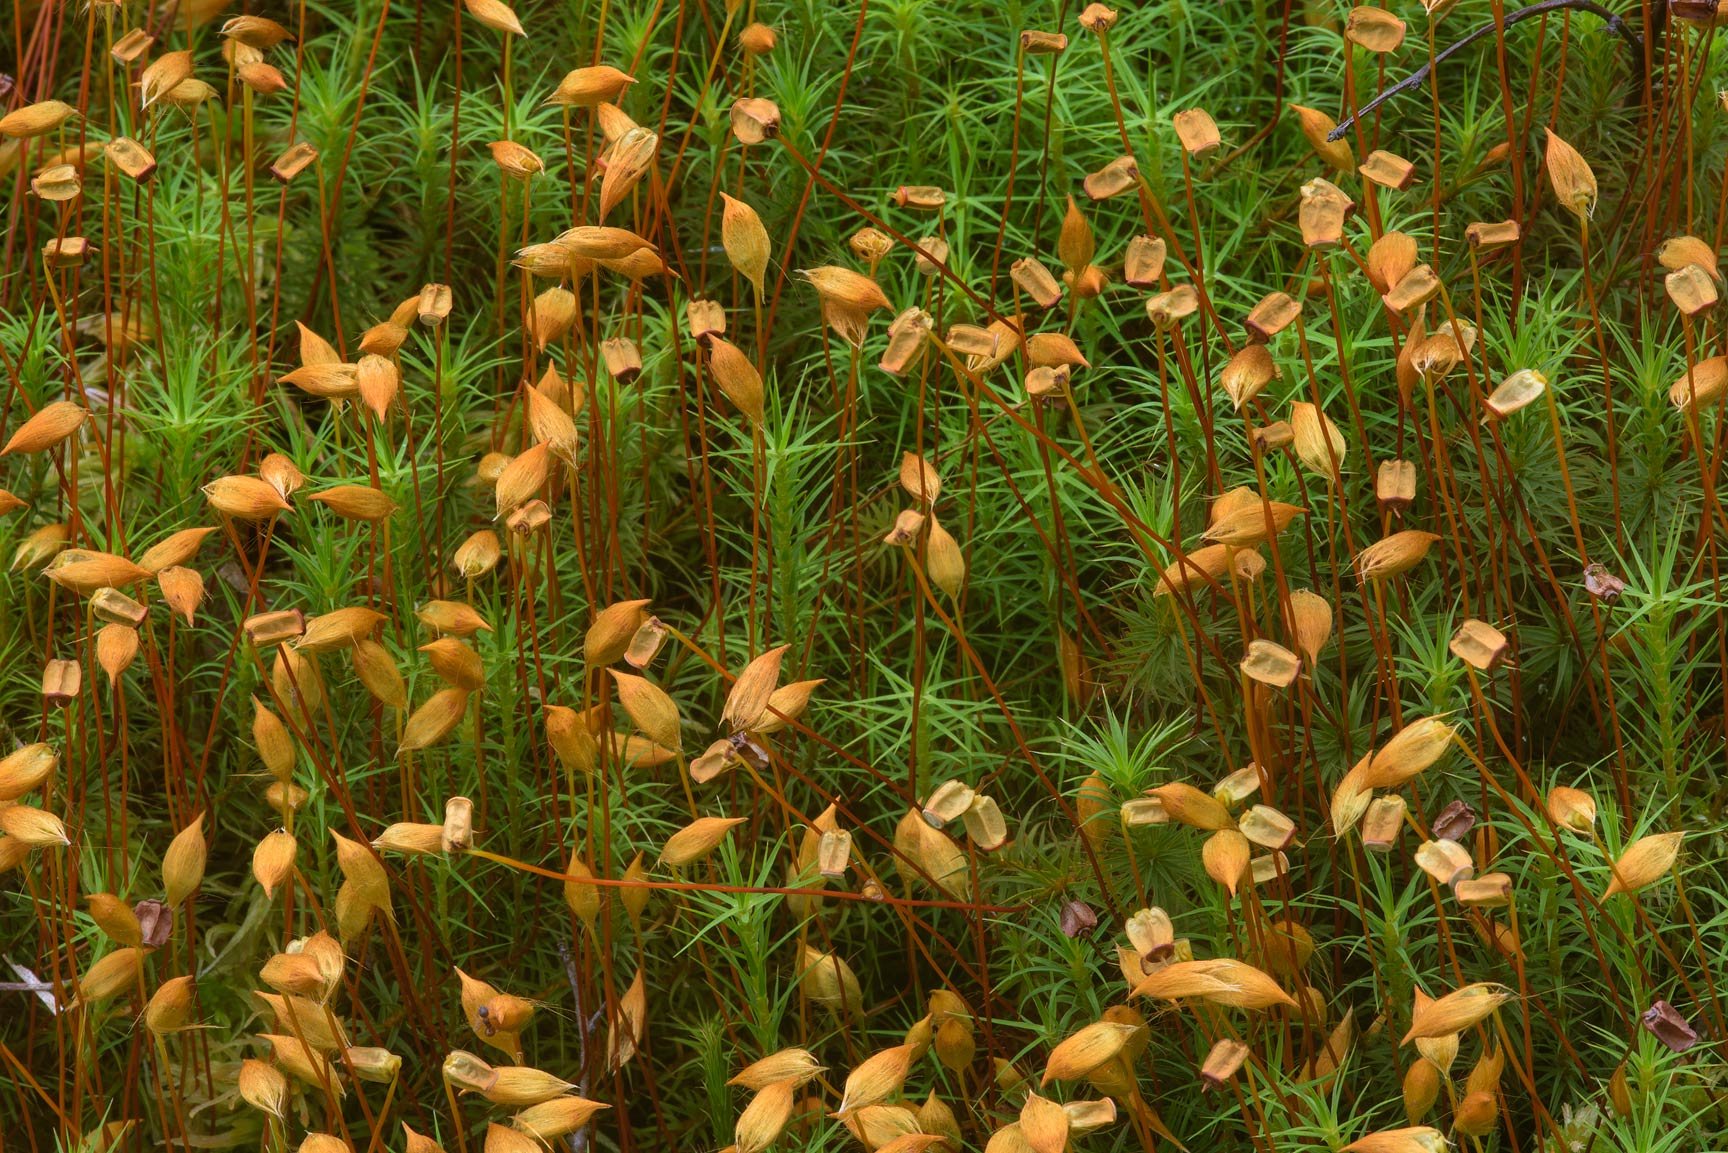 Кукушкин лен относится к цветковым растениям